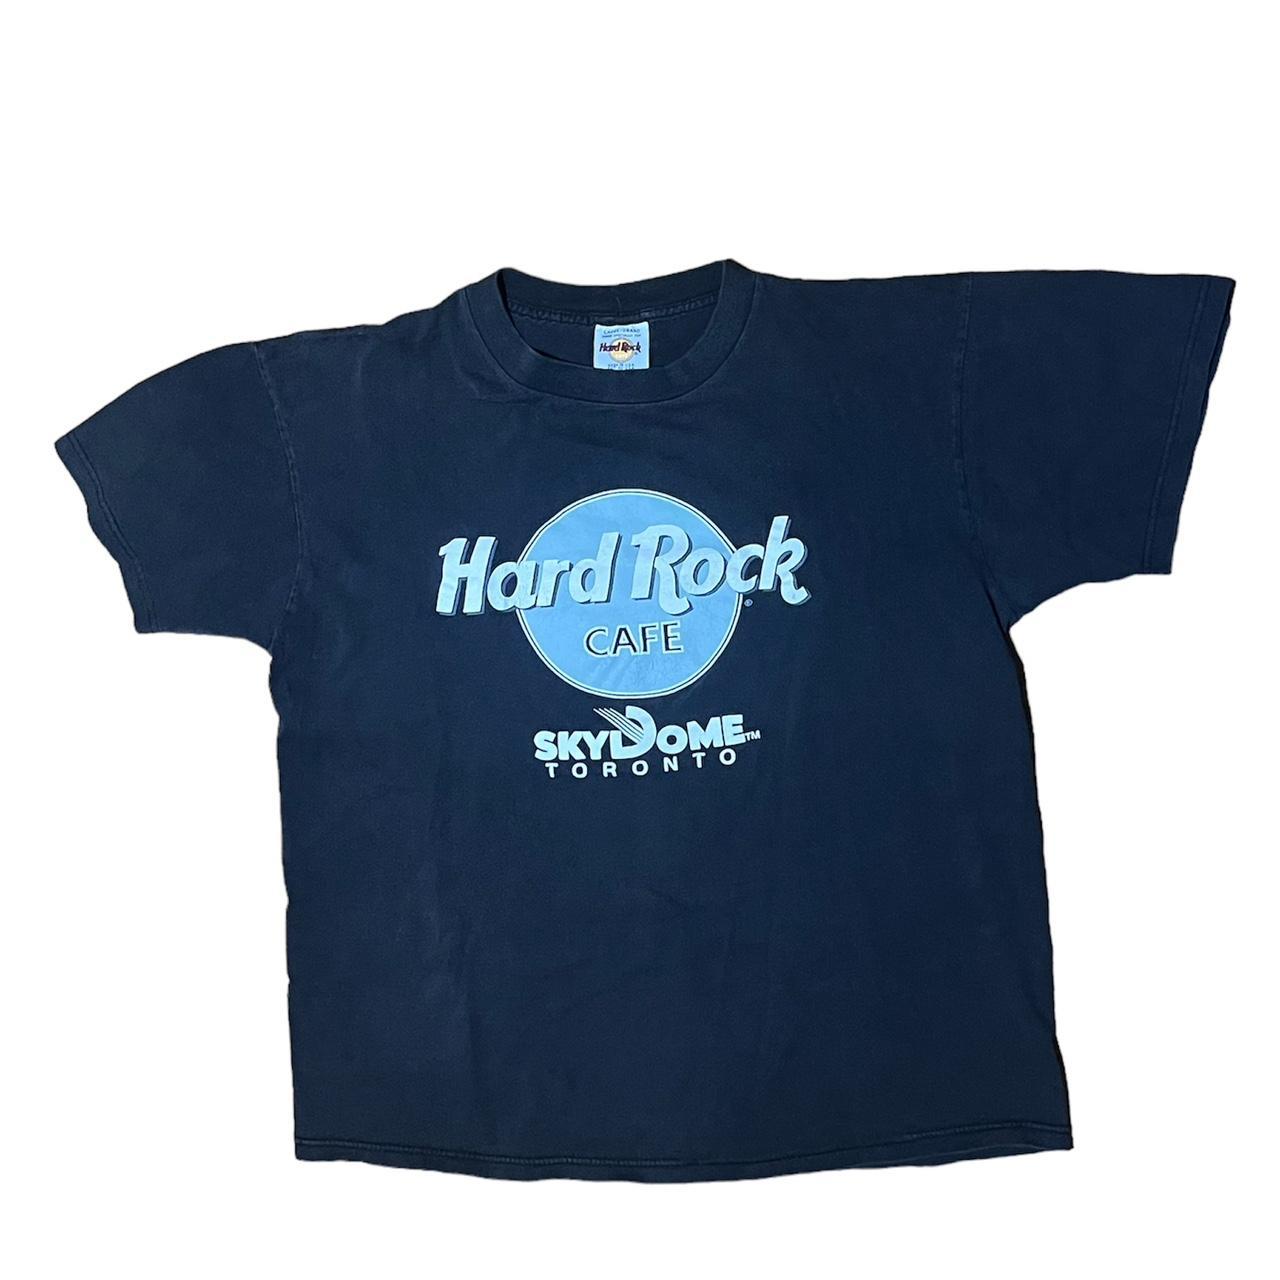 vintage Hard rock cafe T-shirt amazing... - Depop